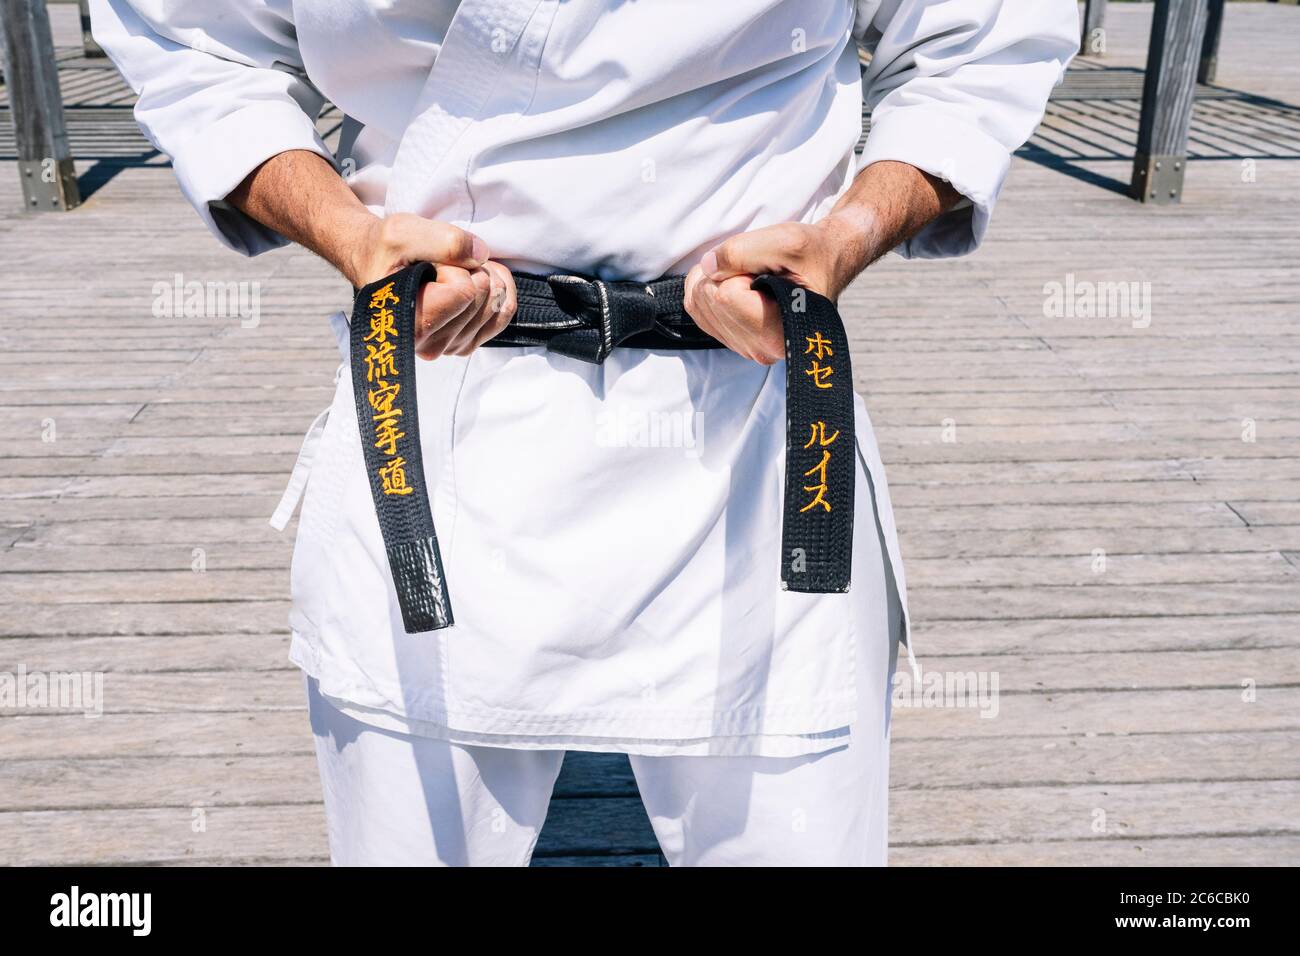 Karate Mann den Knoten seiner schwarzen Gürtel binden Stockfotografie -  Alamy